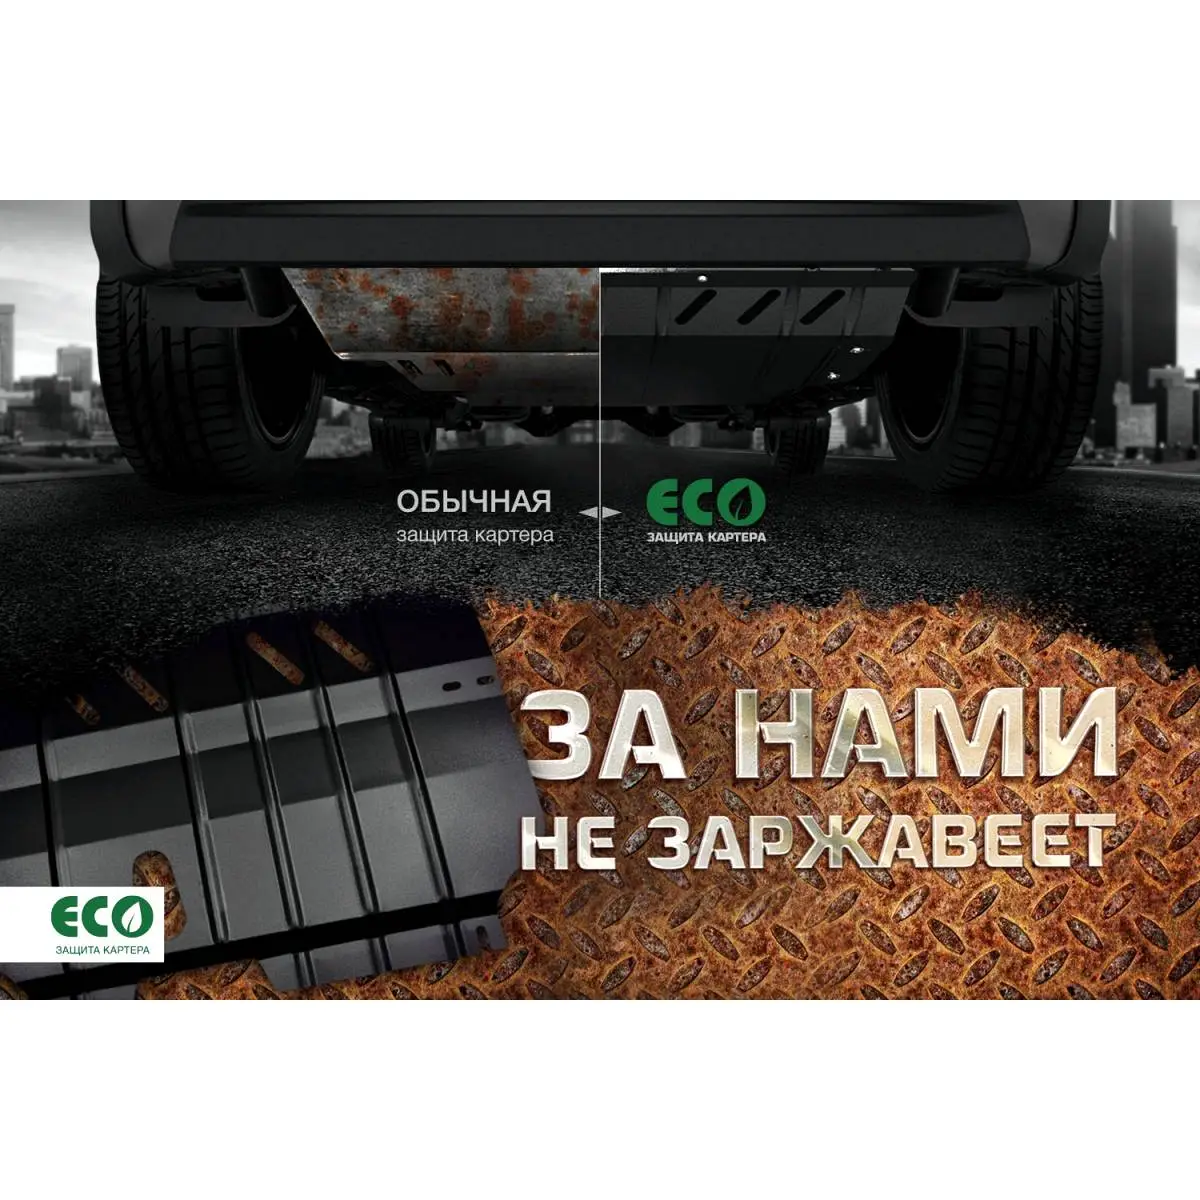 Комплект защиты картера и крепеж Eco TTM KQ 1437099104 eco5226020 LD7PD изображение 7